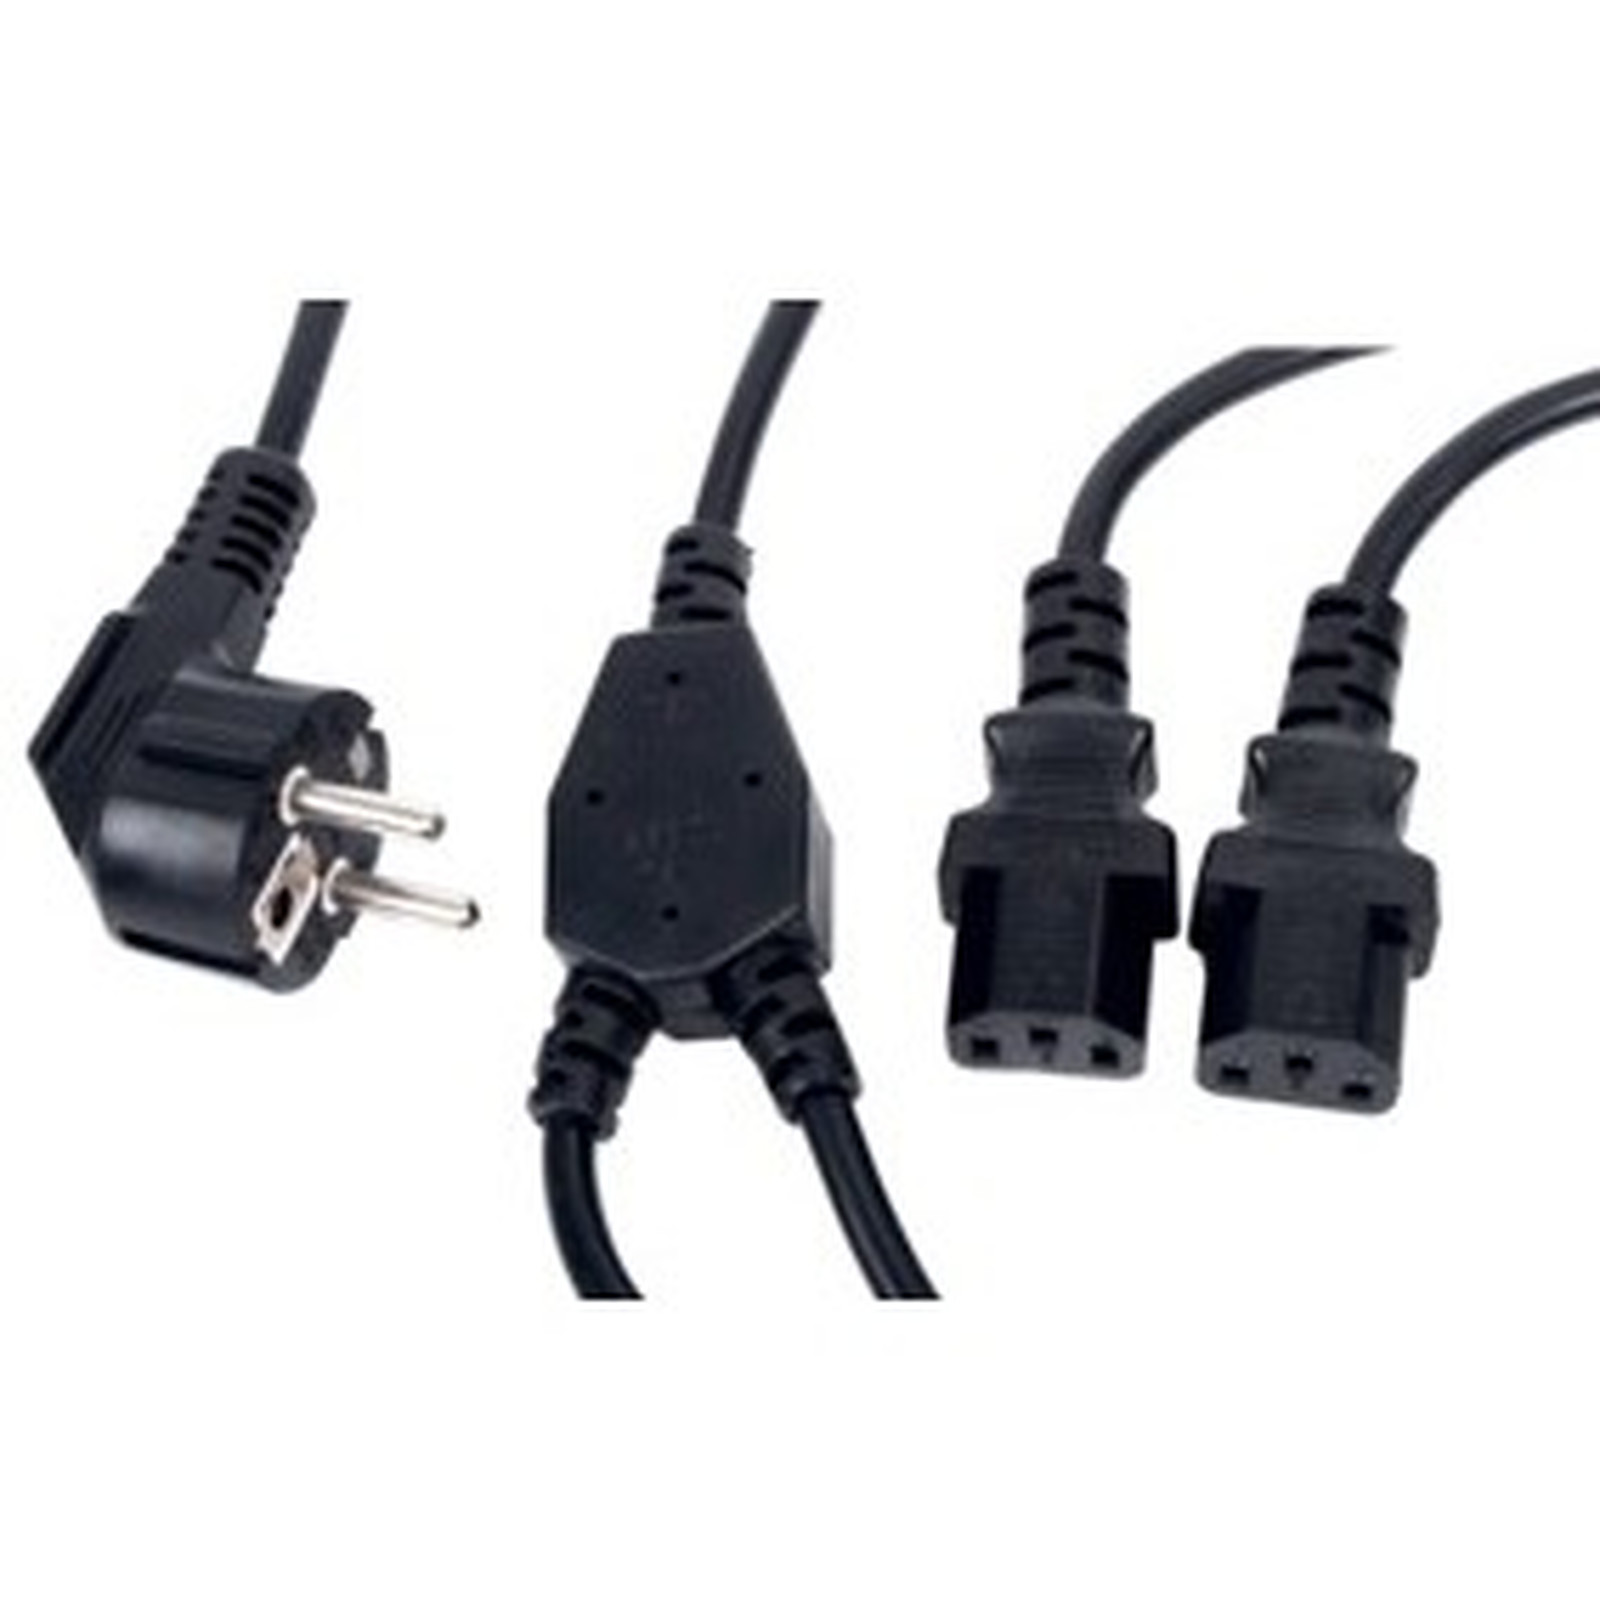 Double cable d'alimentation pour PC, moniteur et onduleur (1,8 m) - Cable Secteur Generique